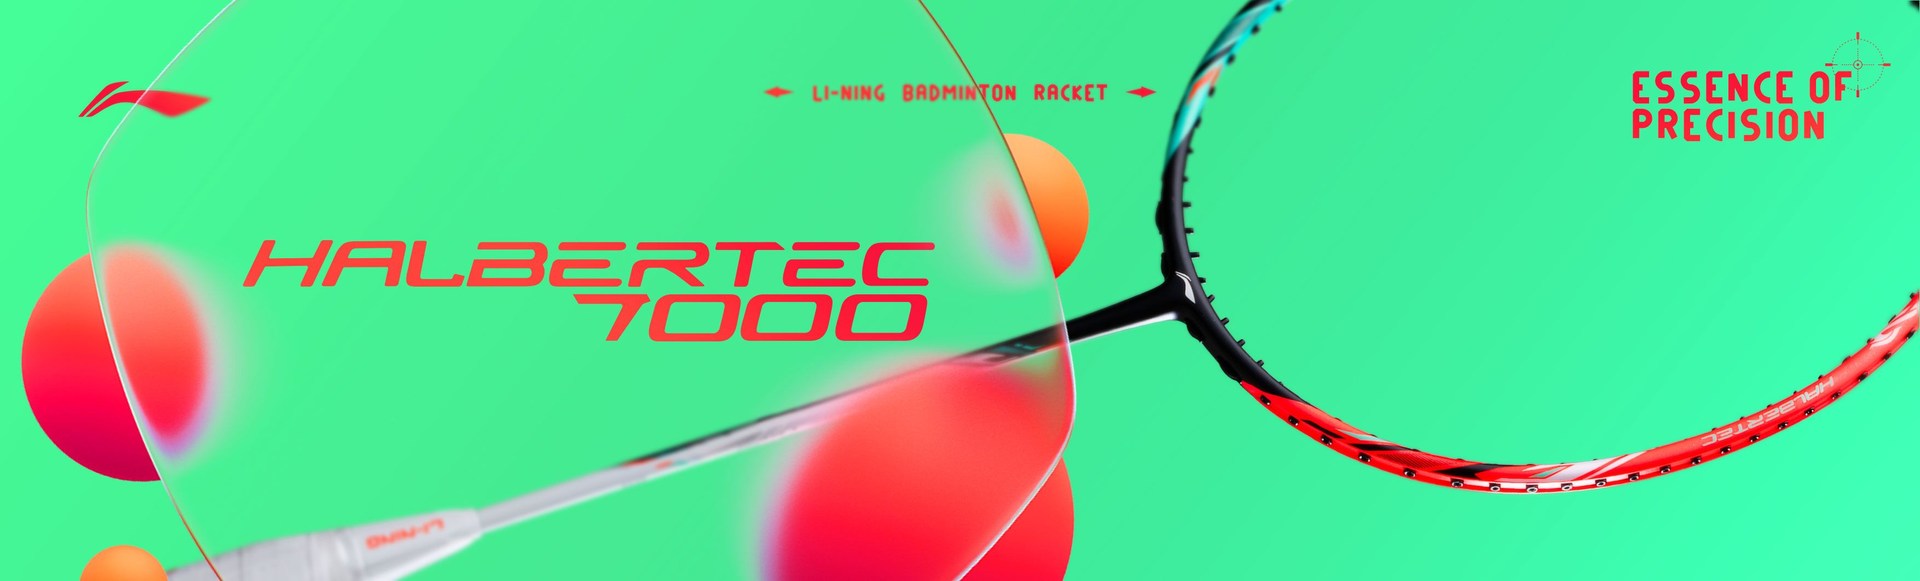 Halbertec 7000 - Badminton Racket